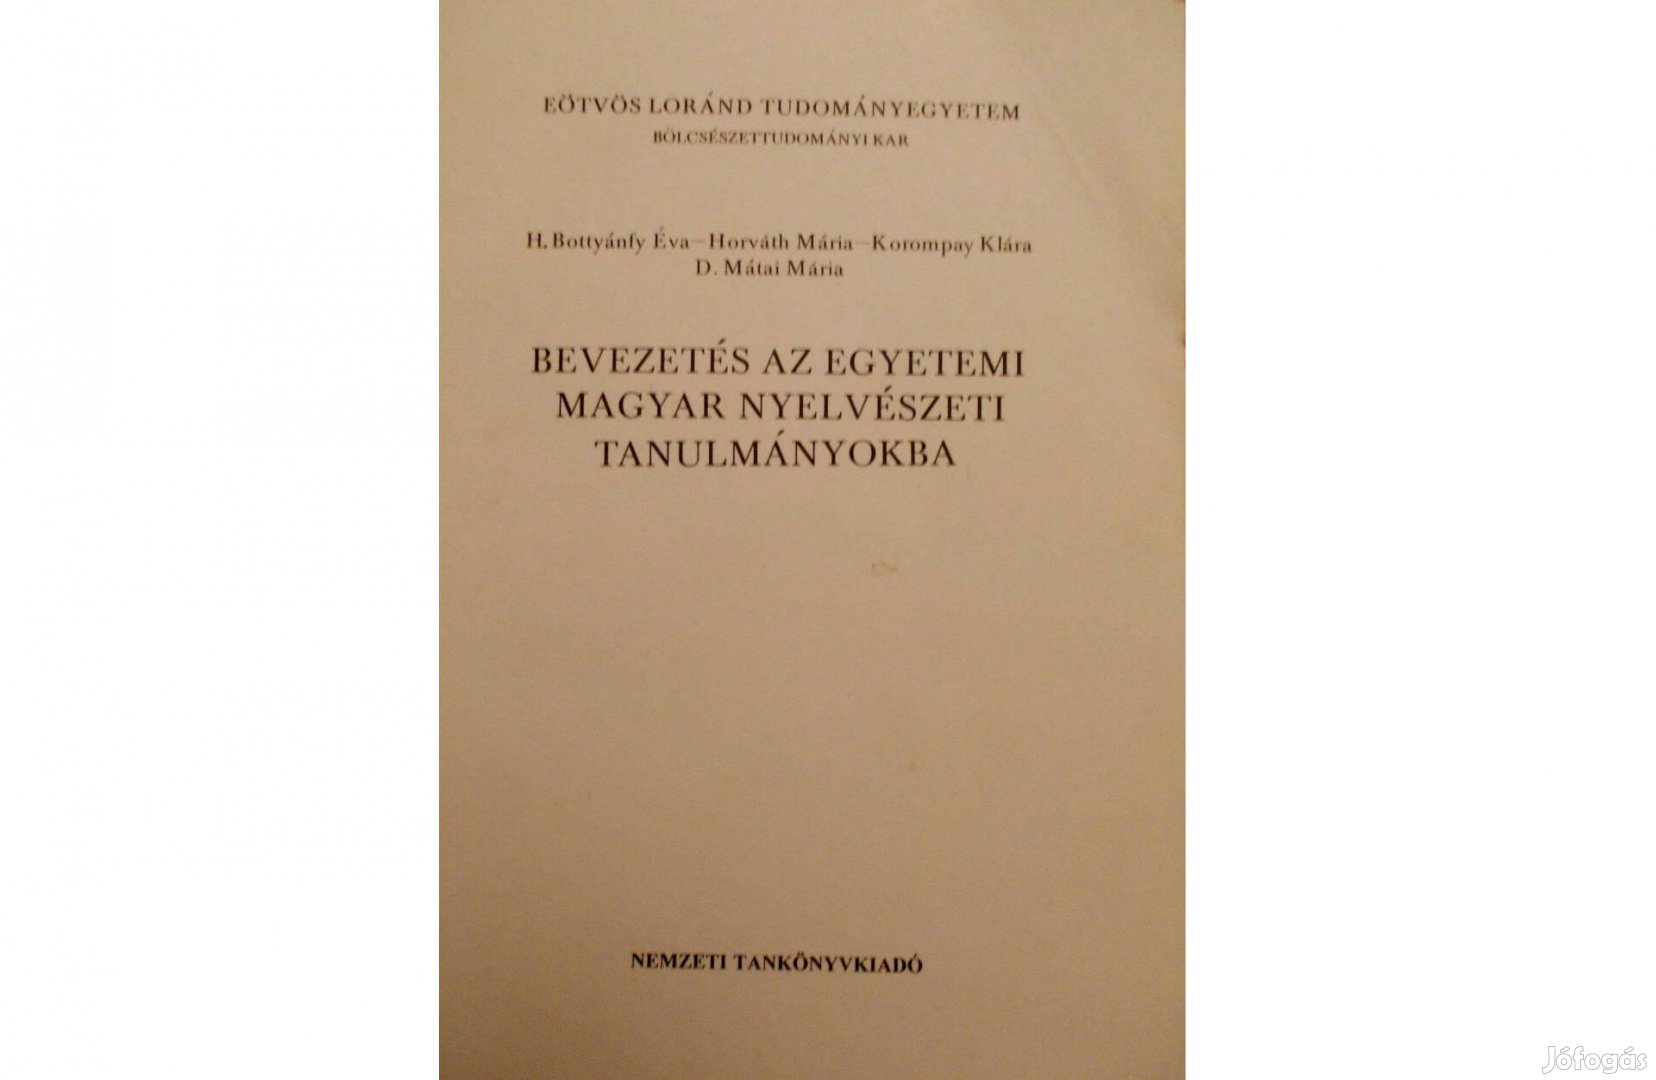 Bevezetés az egyetemi magyar nyelvészeti tanulmányokba - ELTE, jegyzet